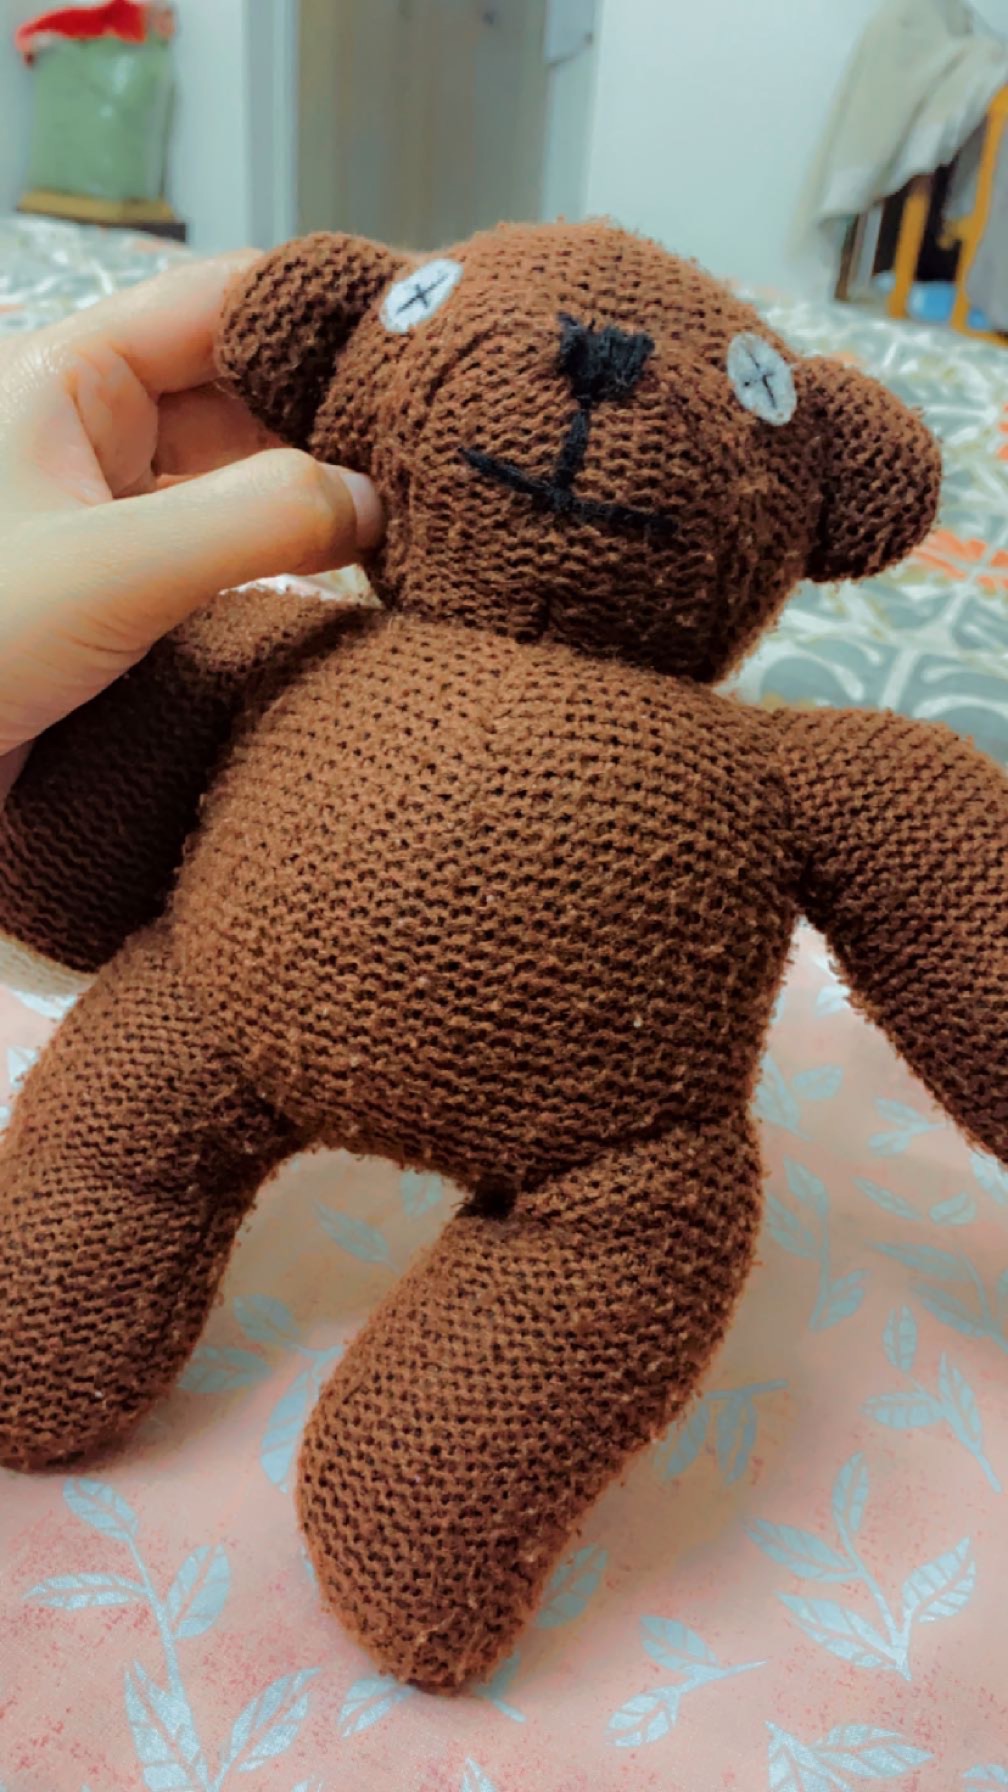 23cm Mr Bean Teddy Bear Animal Stuffed Plush Toy Soft Cartoon